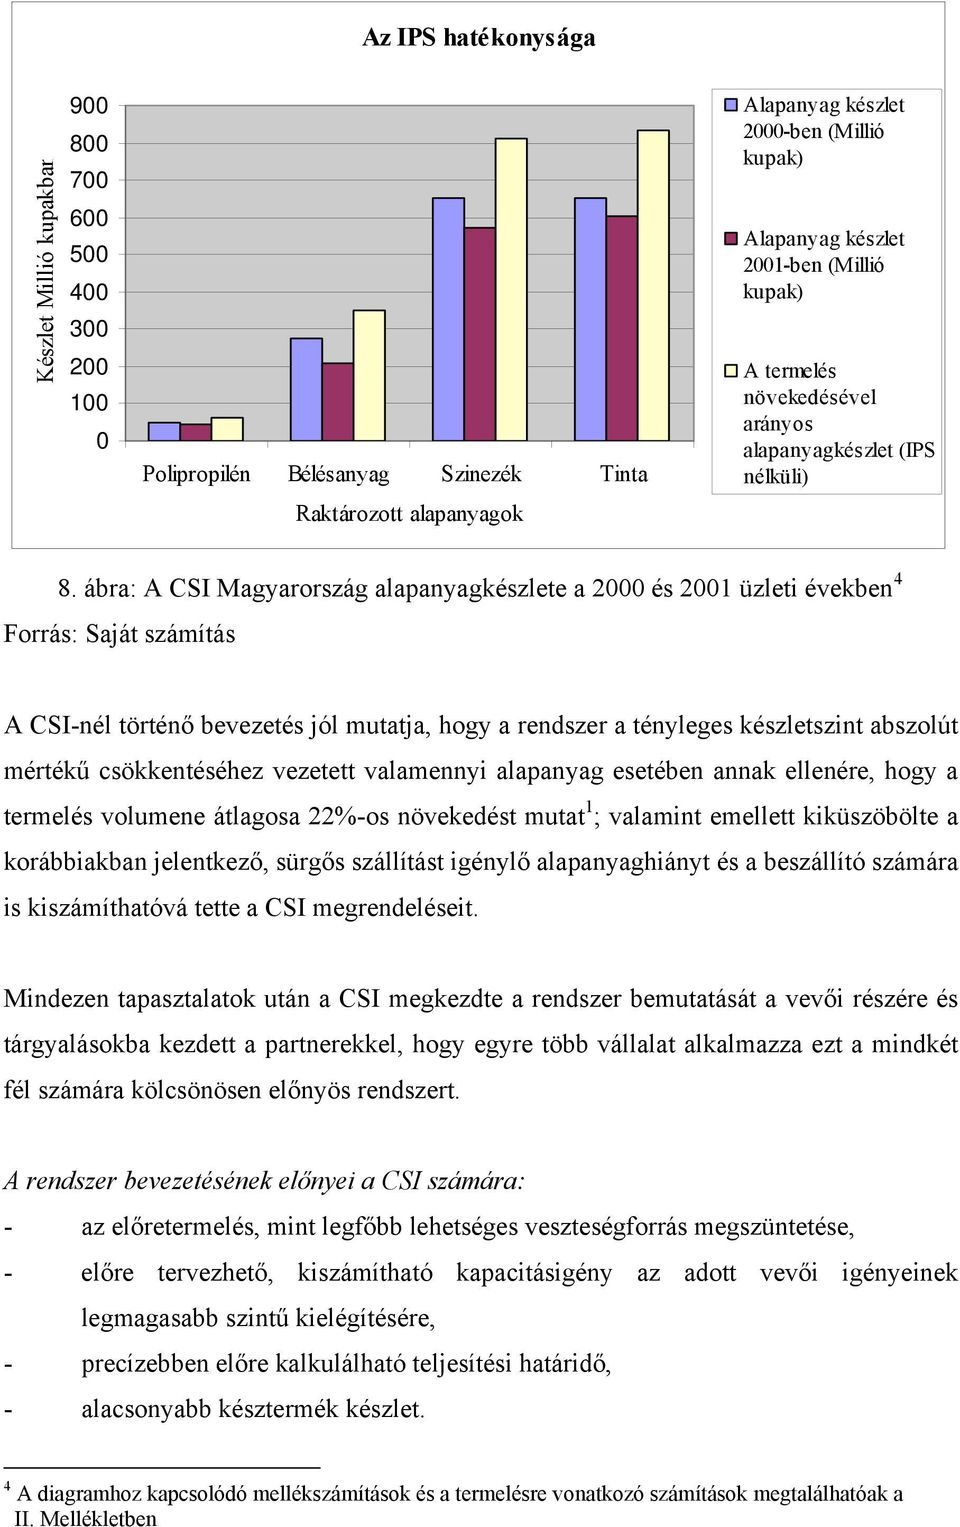 ábra: A CSI Magyarország alapanyagkészlete a 2000 és 2001 üzleti években 4 Forrás: Saját számítás A CSI-nél történő bevezetés jól mutatja, hogy a rendszer a tényleges készletszint abszolút mértékű